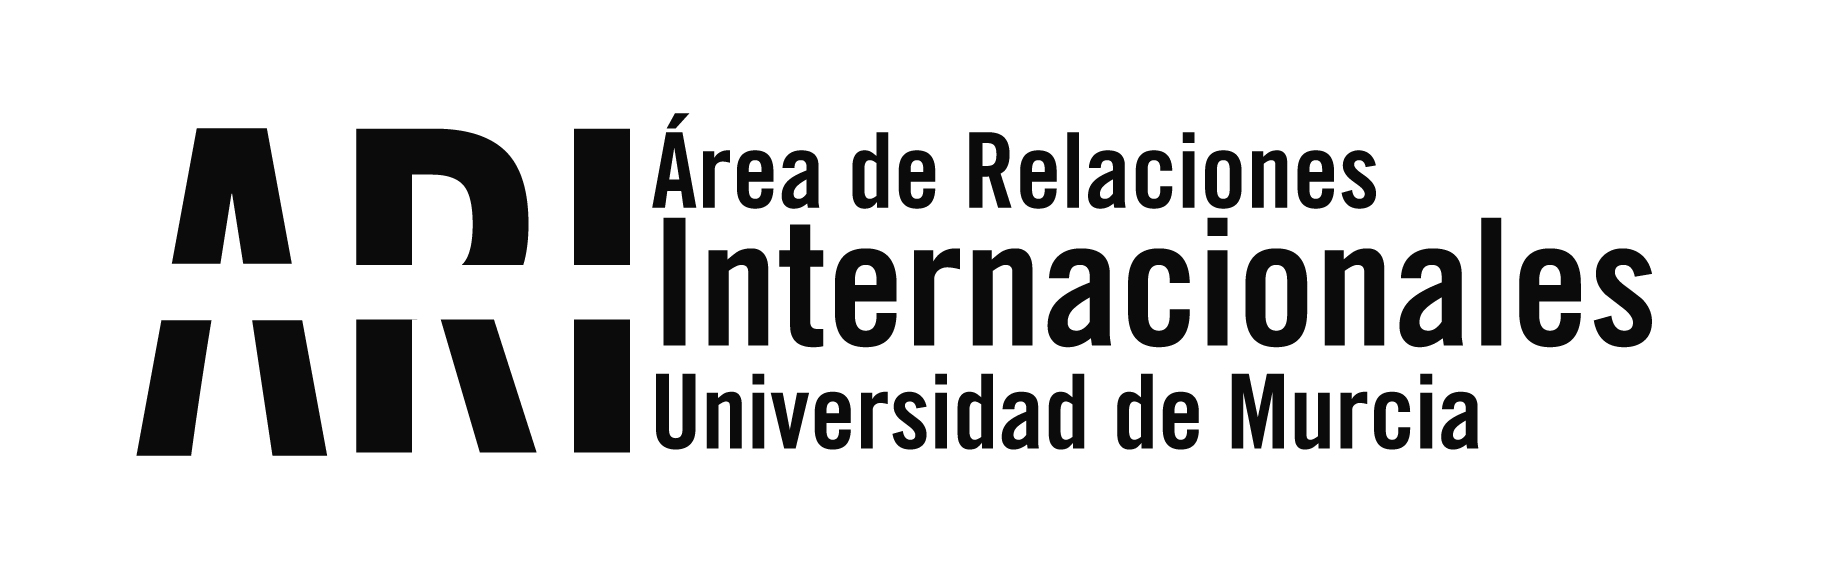 Lanzamiento de la semana  BUMI17 de Bienvenida Universidad de Murcia Internacional 2017-18 - Área de Relaciones Internacionales